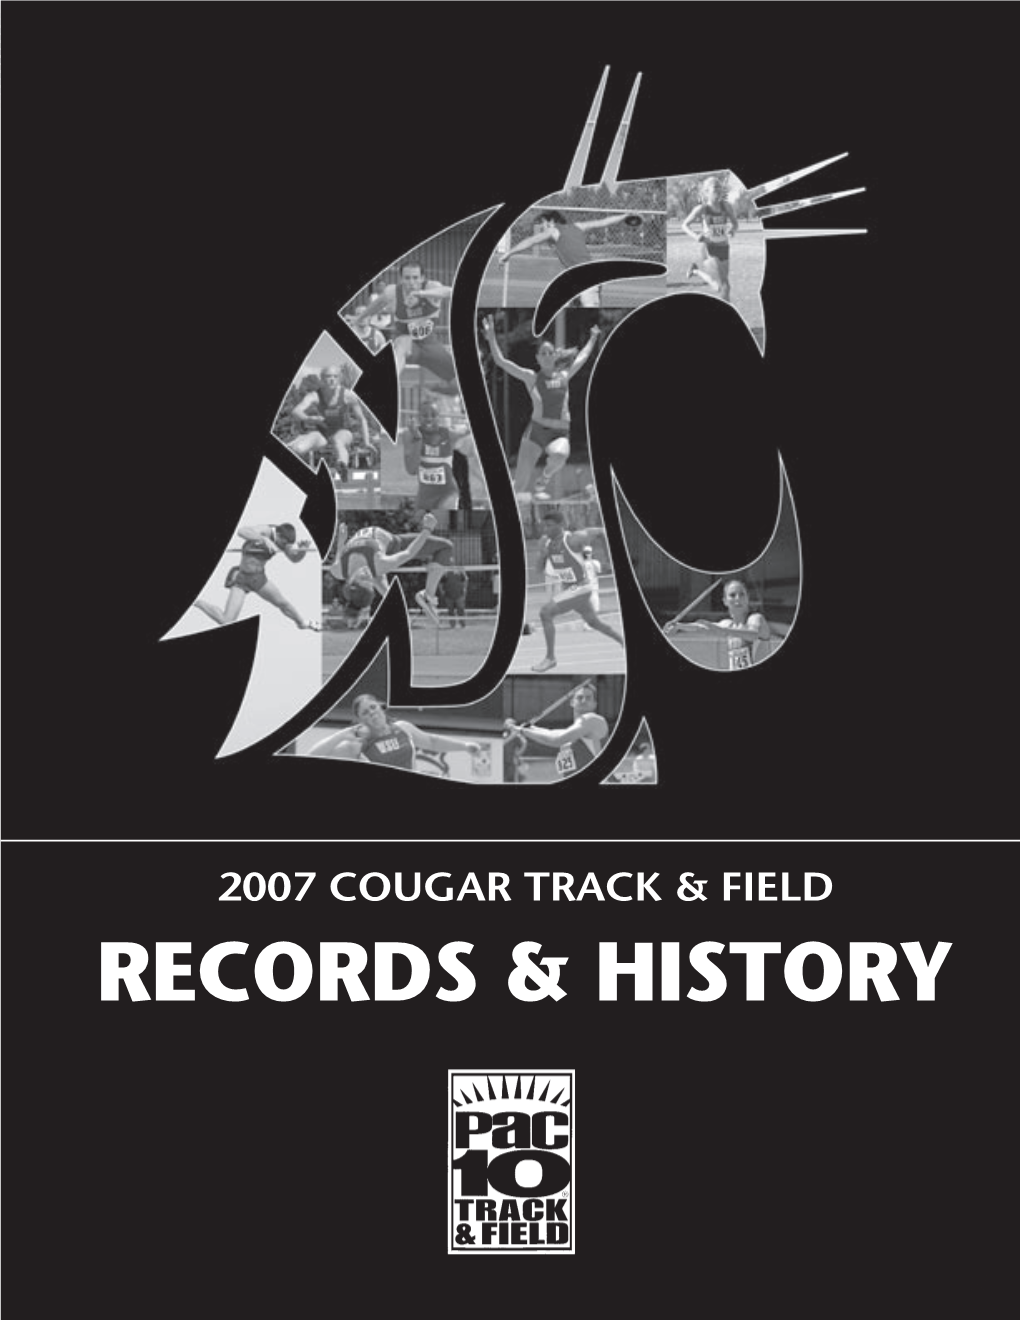 Records & History